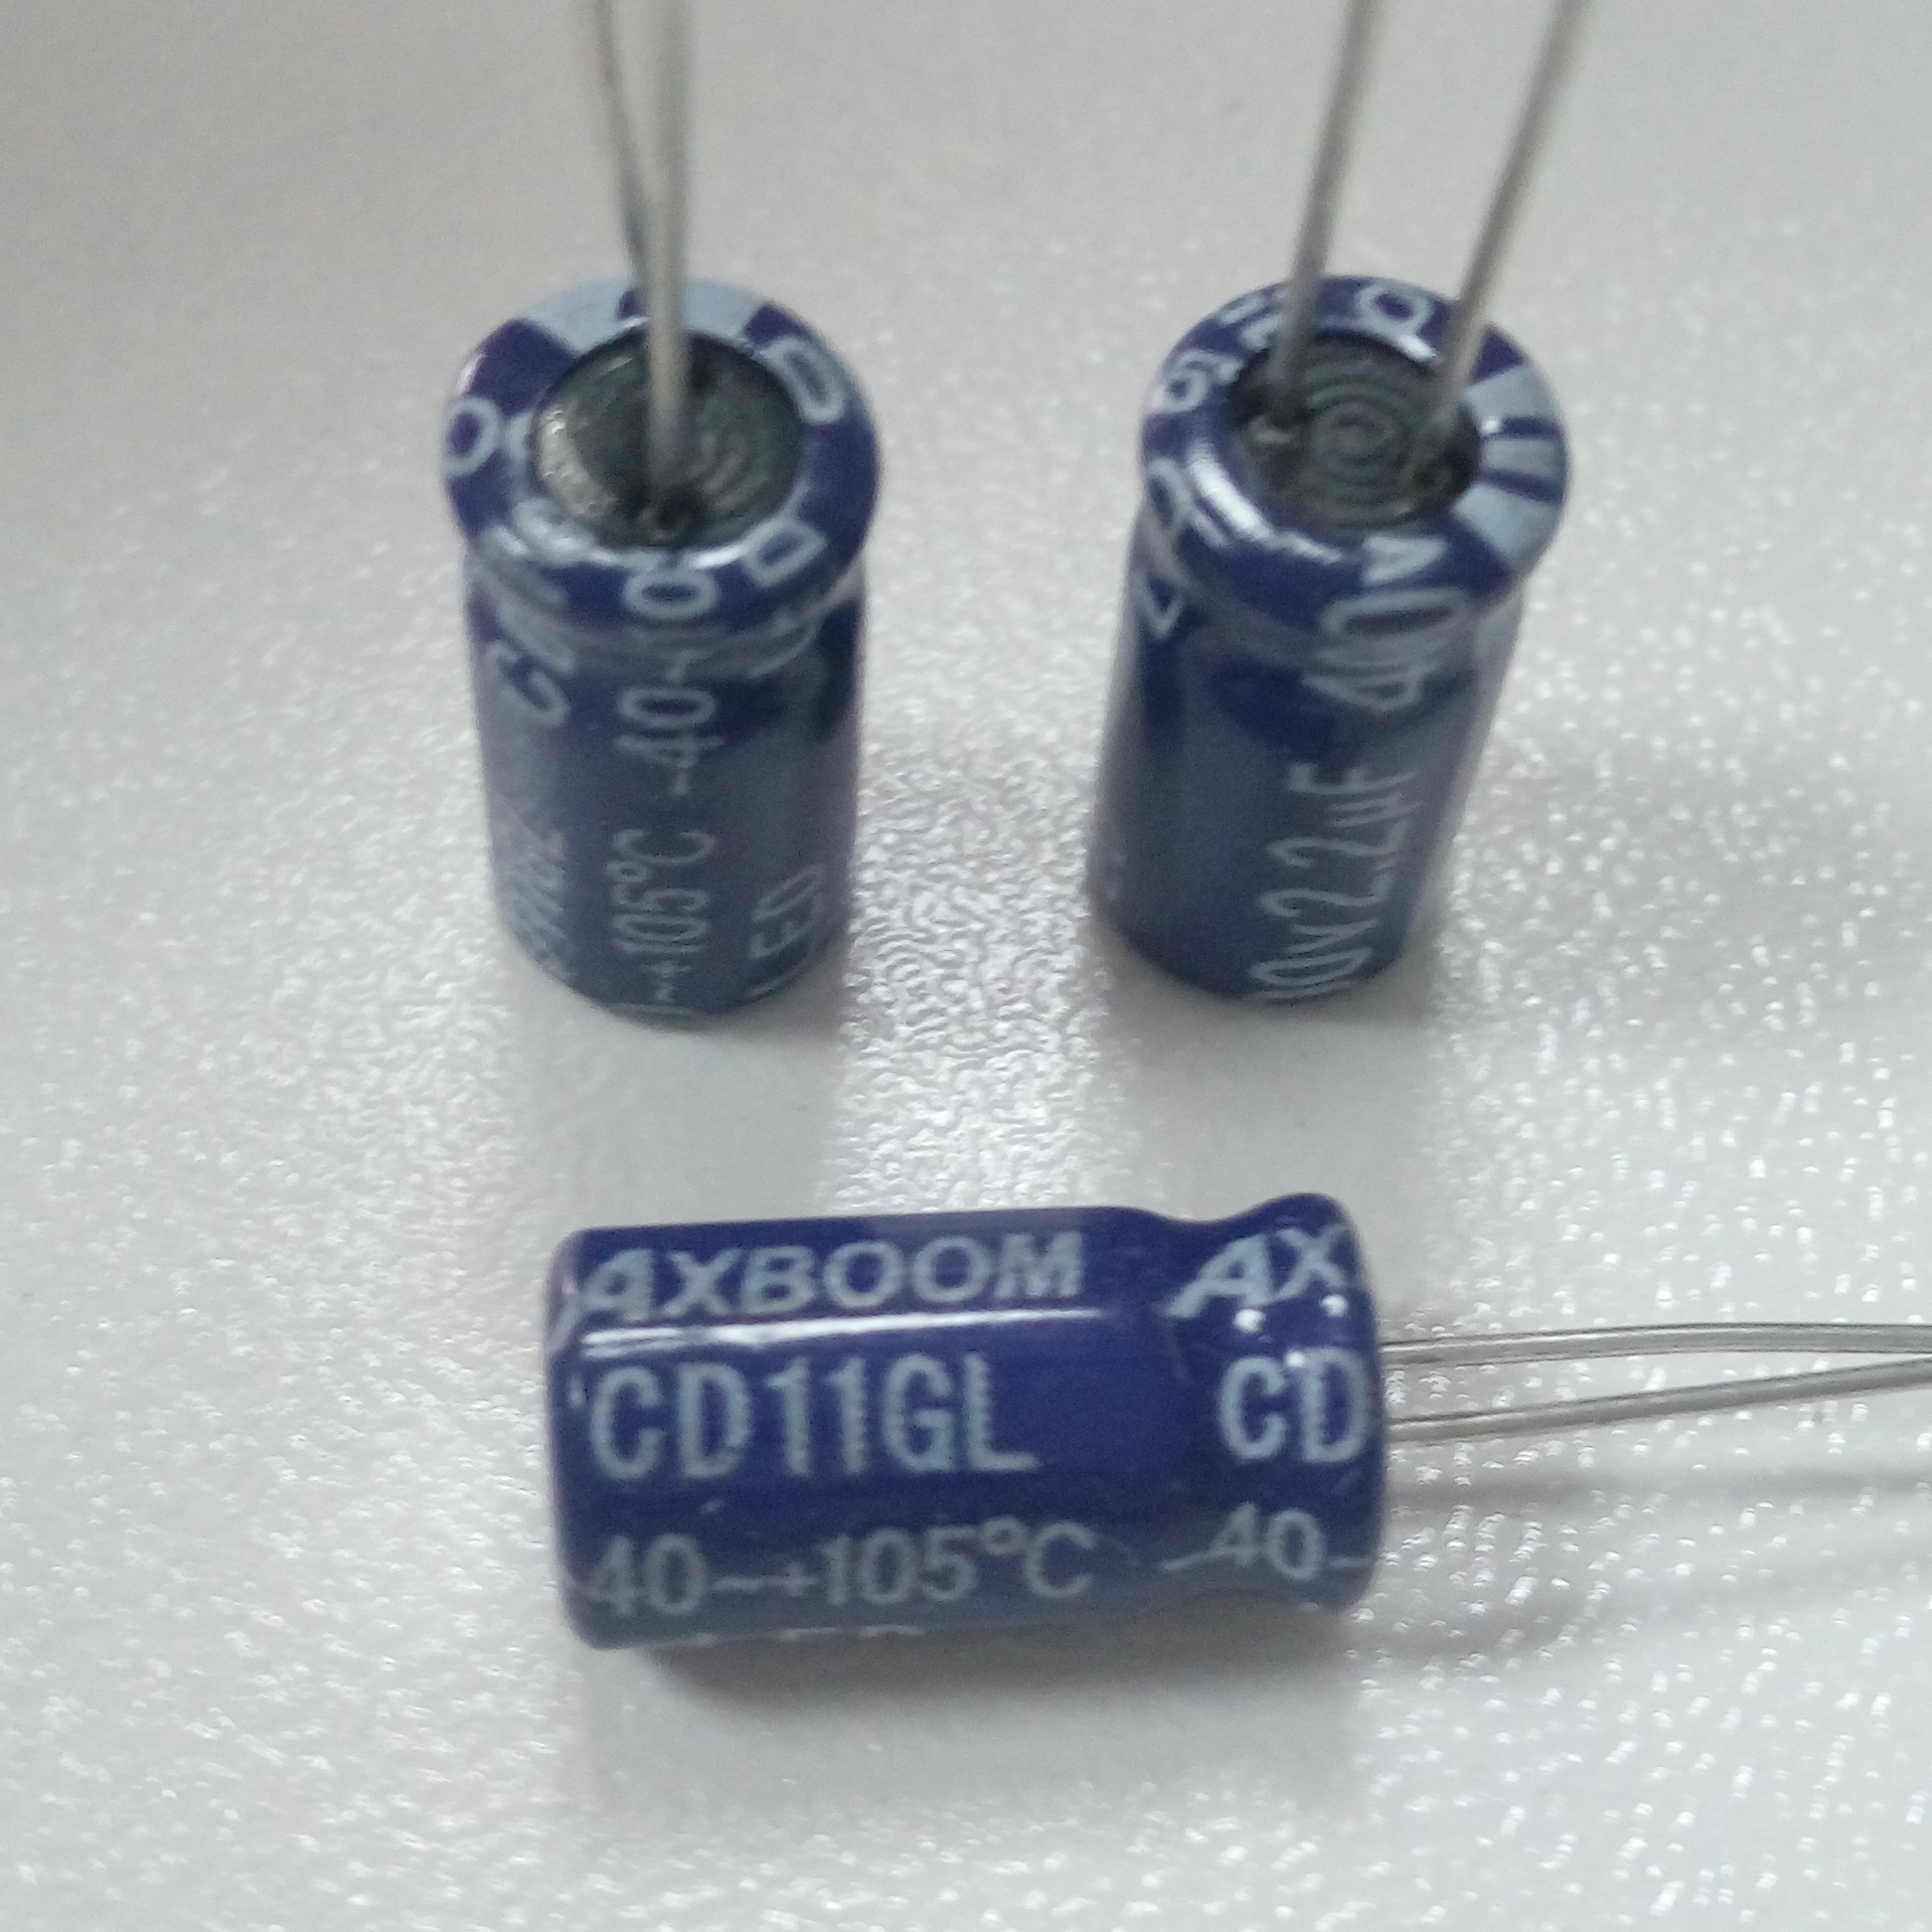 热销CD11GL 400V2.2UF插件电容器 ，可适用于快关、照明等电源配置器